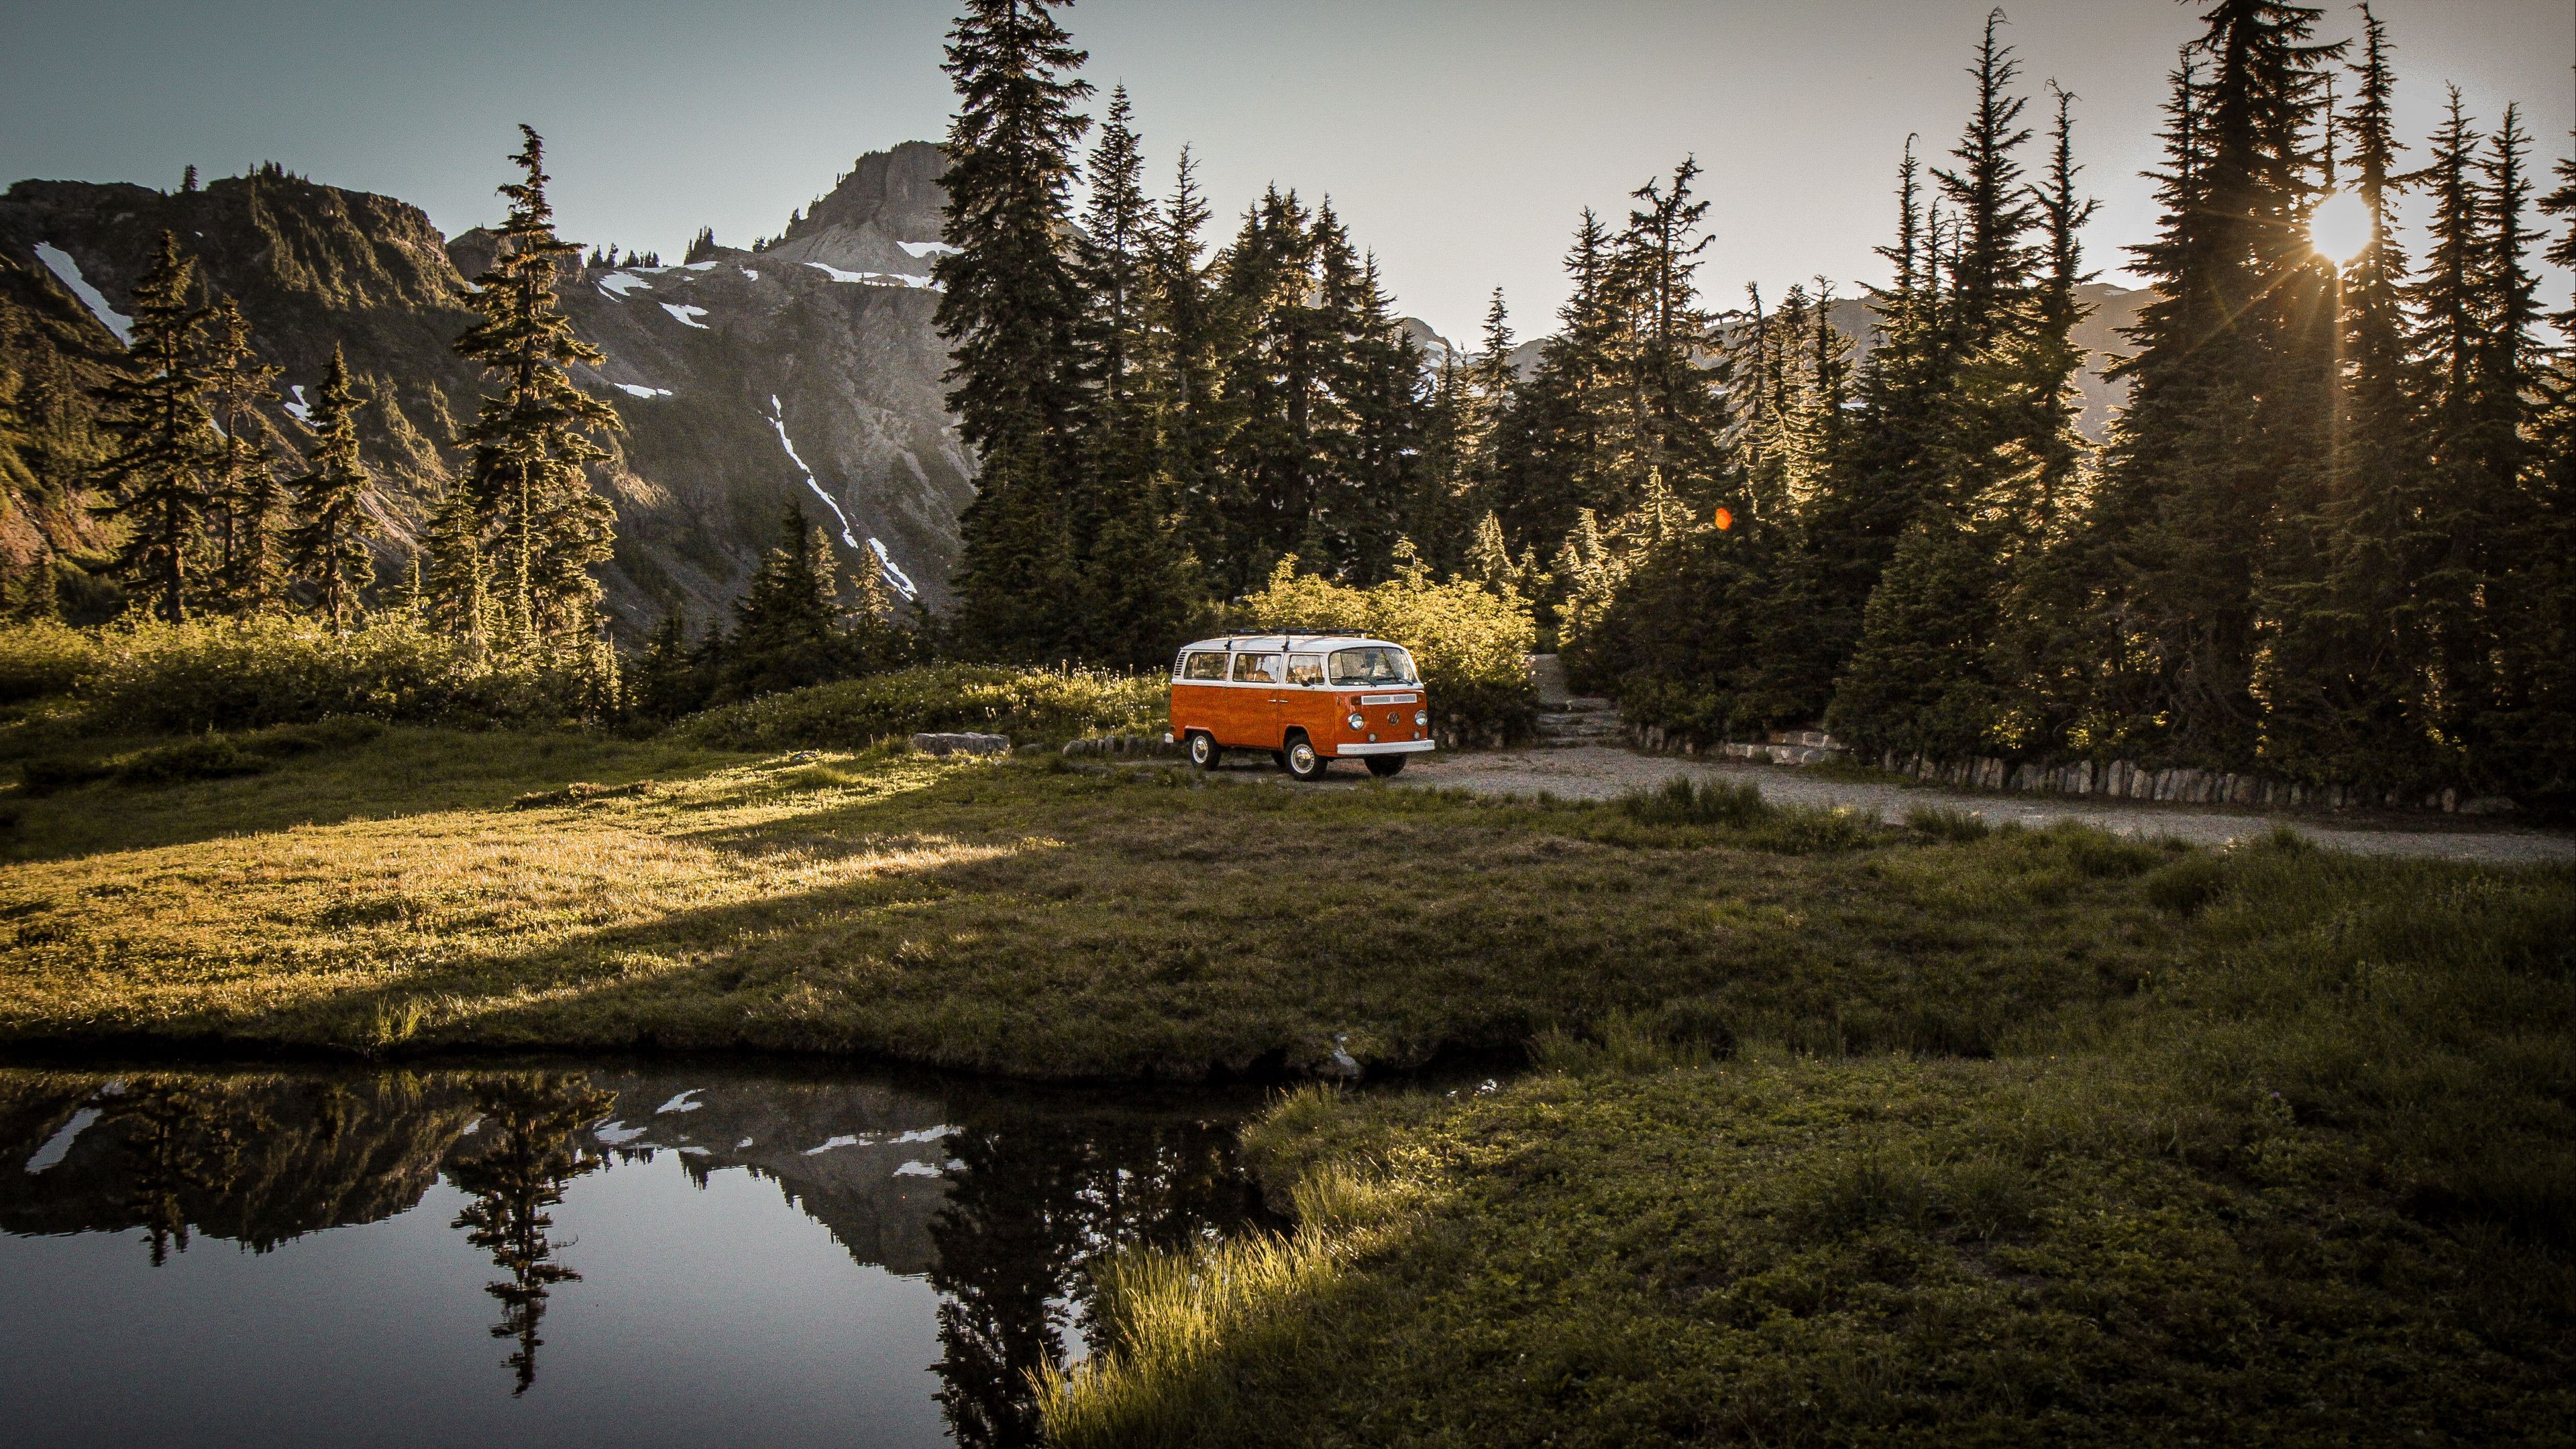 Đừng bỏ lỡ cơ hội chiêm ngưỡng chiếc xe van cũ màu nâu sung túc trên nền thiên nhiên đẹp tuyệt vời với độ phân giải 4k UHD. Bức ảnh sẽ mang đến cho bạn trải nghiệm khó quên, cảm nhận chi tiết và hoàn hảo từ mọi góc độ.